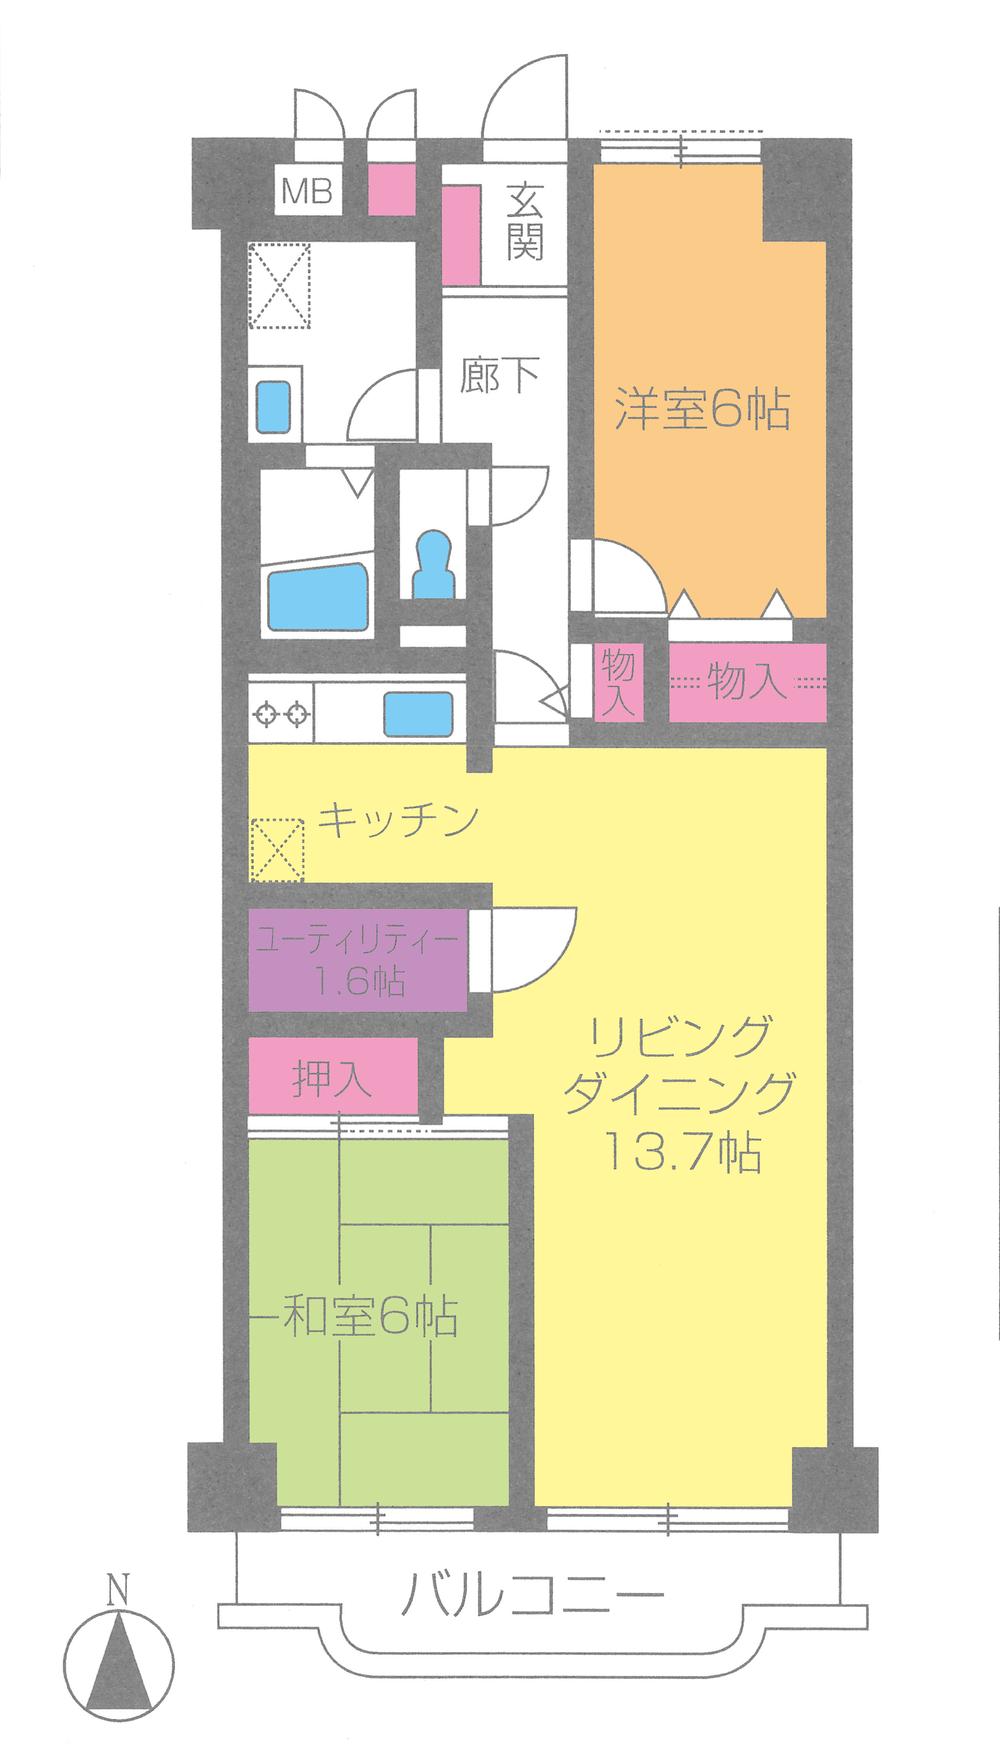 Floor plan. 2LDK, Price 14,490,000 yen, Occupied area 69.44 sq m , Balcony area 6.4 sq m floor plan